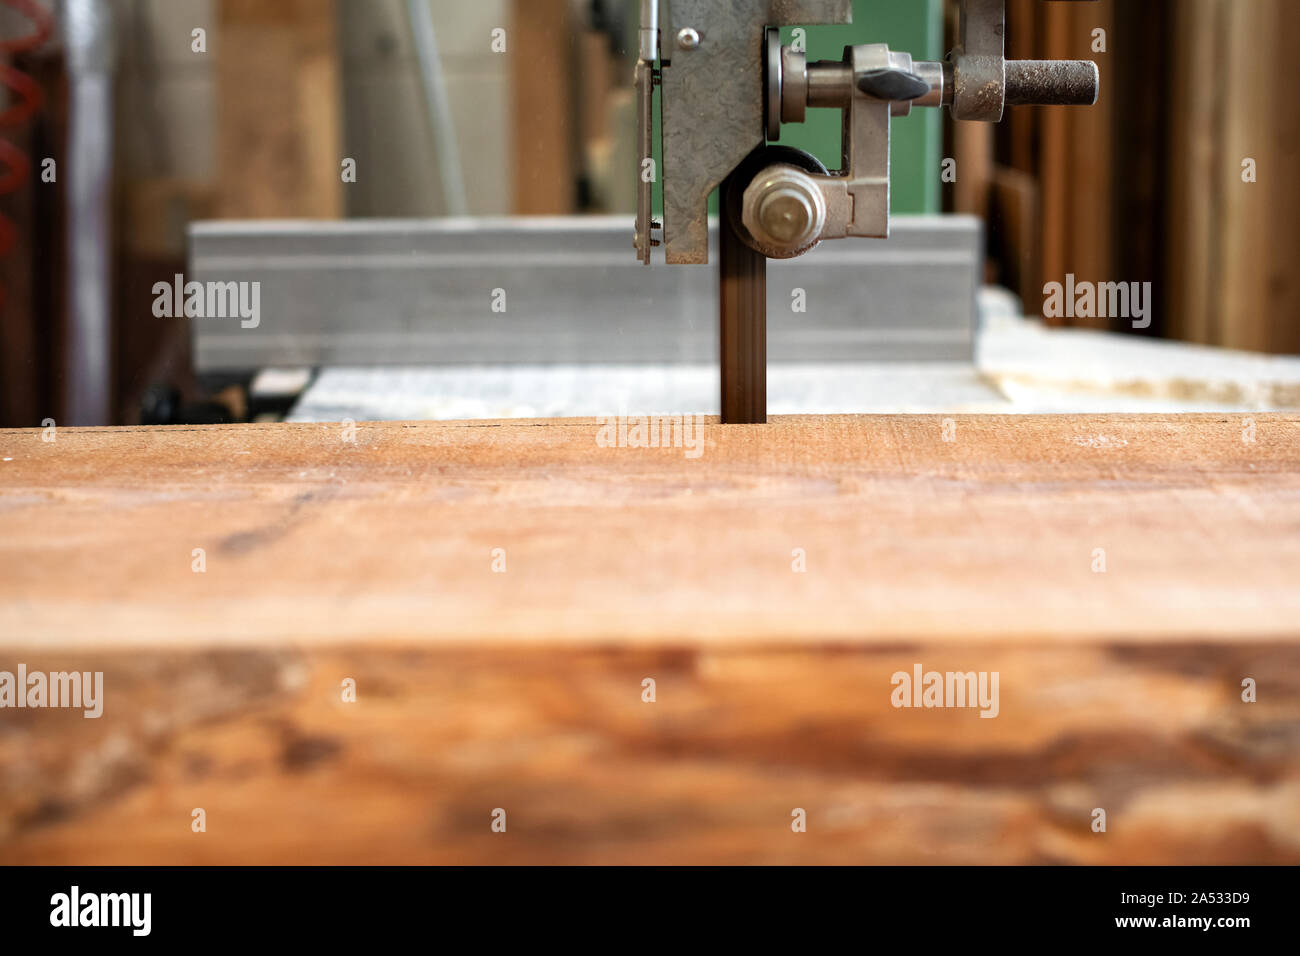 Serrar madera utilizando una sierra de cinta en una carpintería o taller de carpintería en un primer plano sobre la plancha de madera y la banda de la sierra Foto de stock